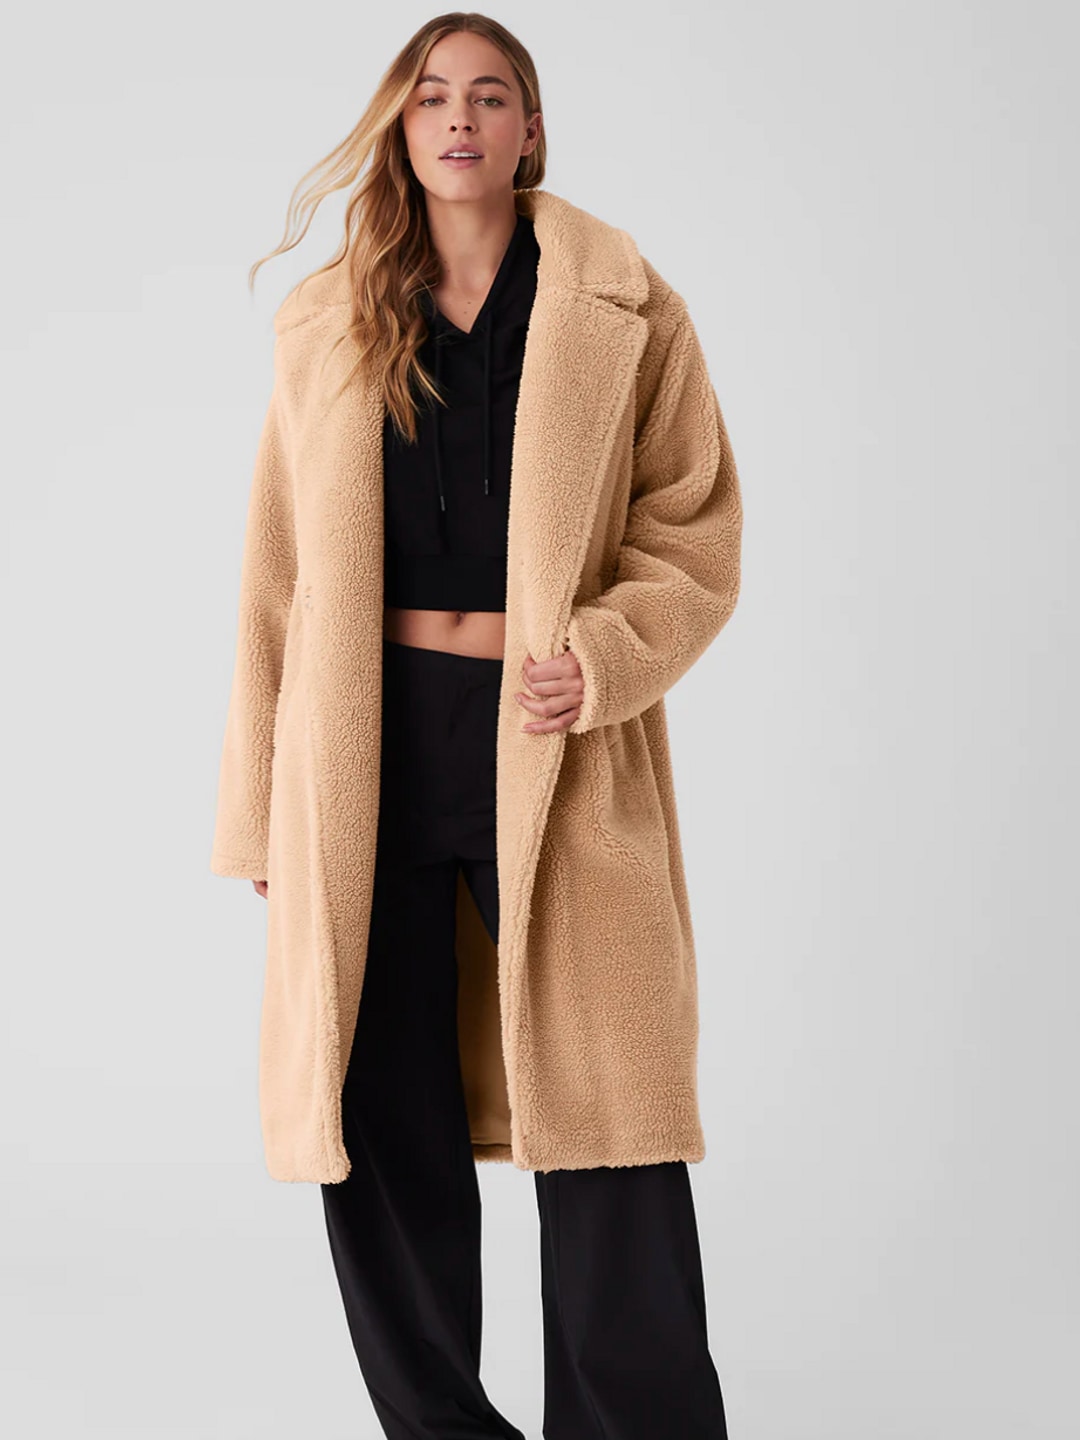 Model wearing camel teddy coat 